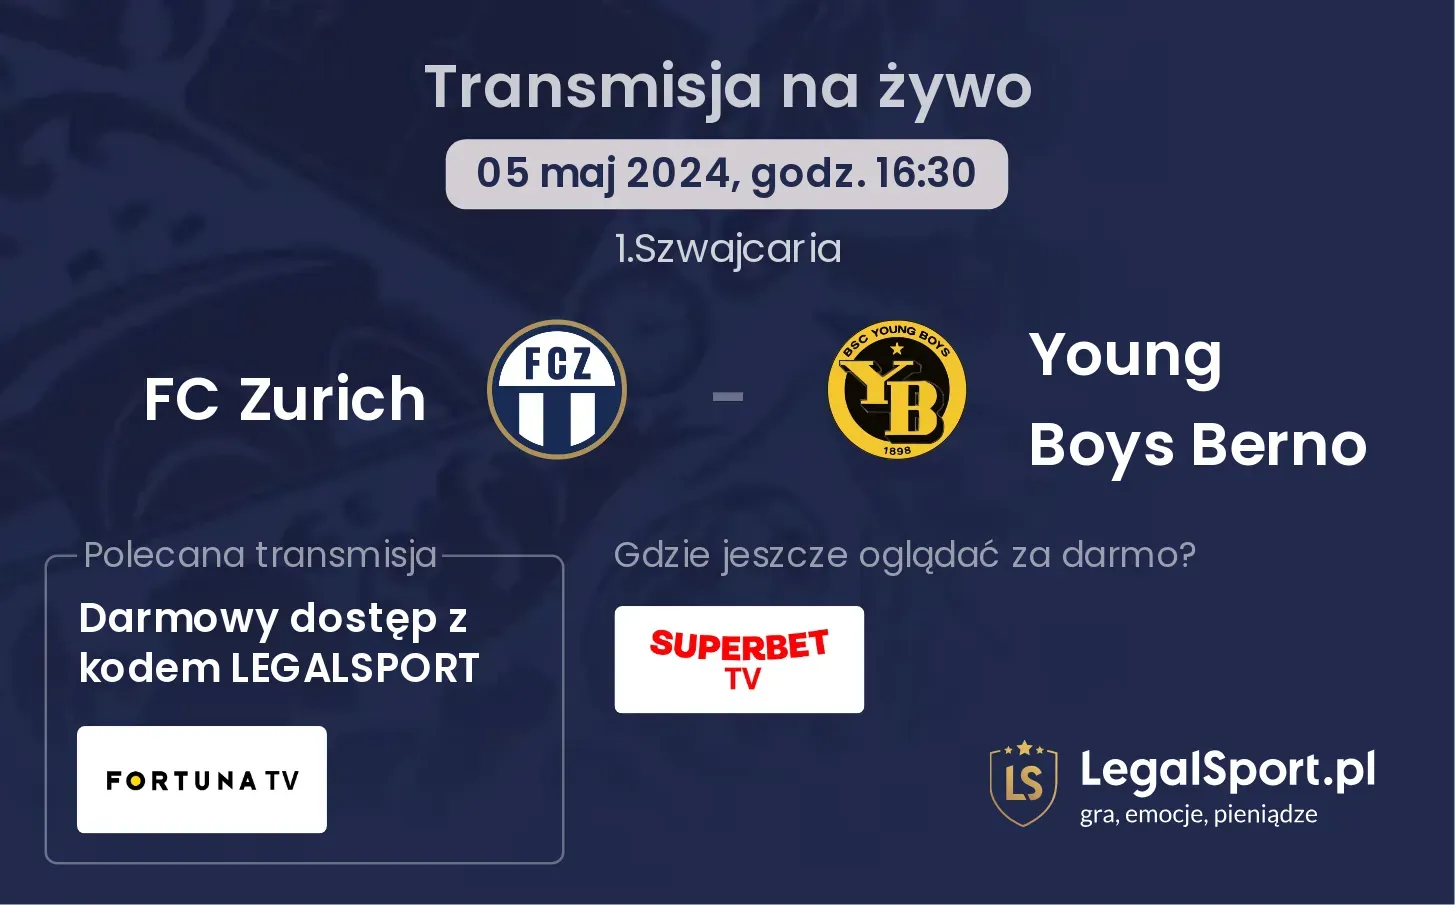 FC Zurich - Young Boys Berno transmisja na żywo